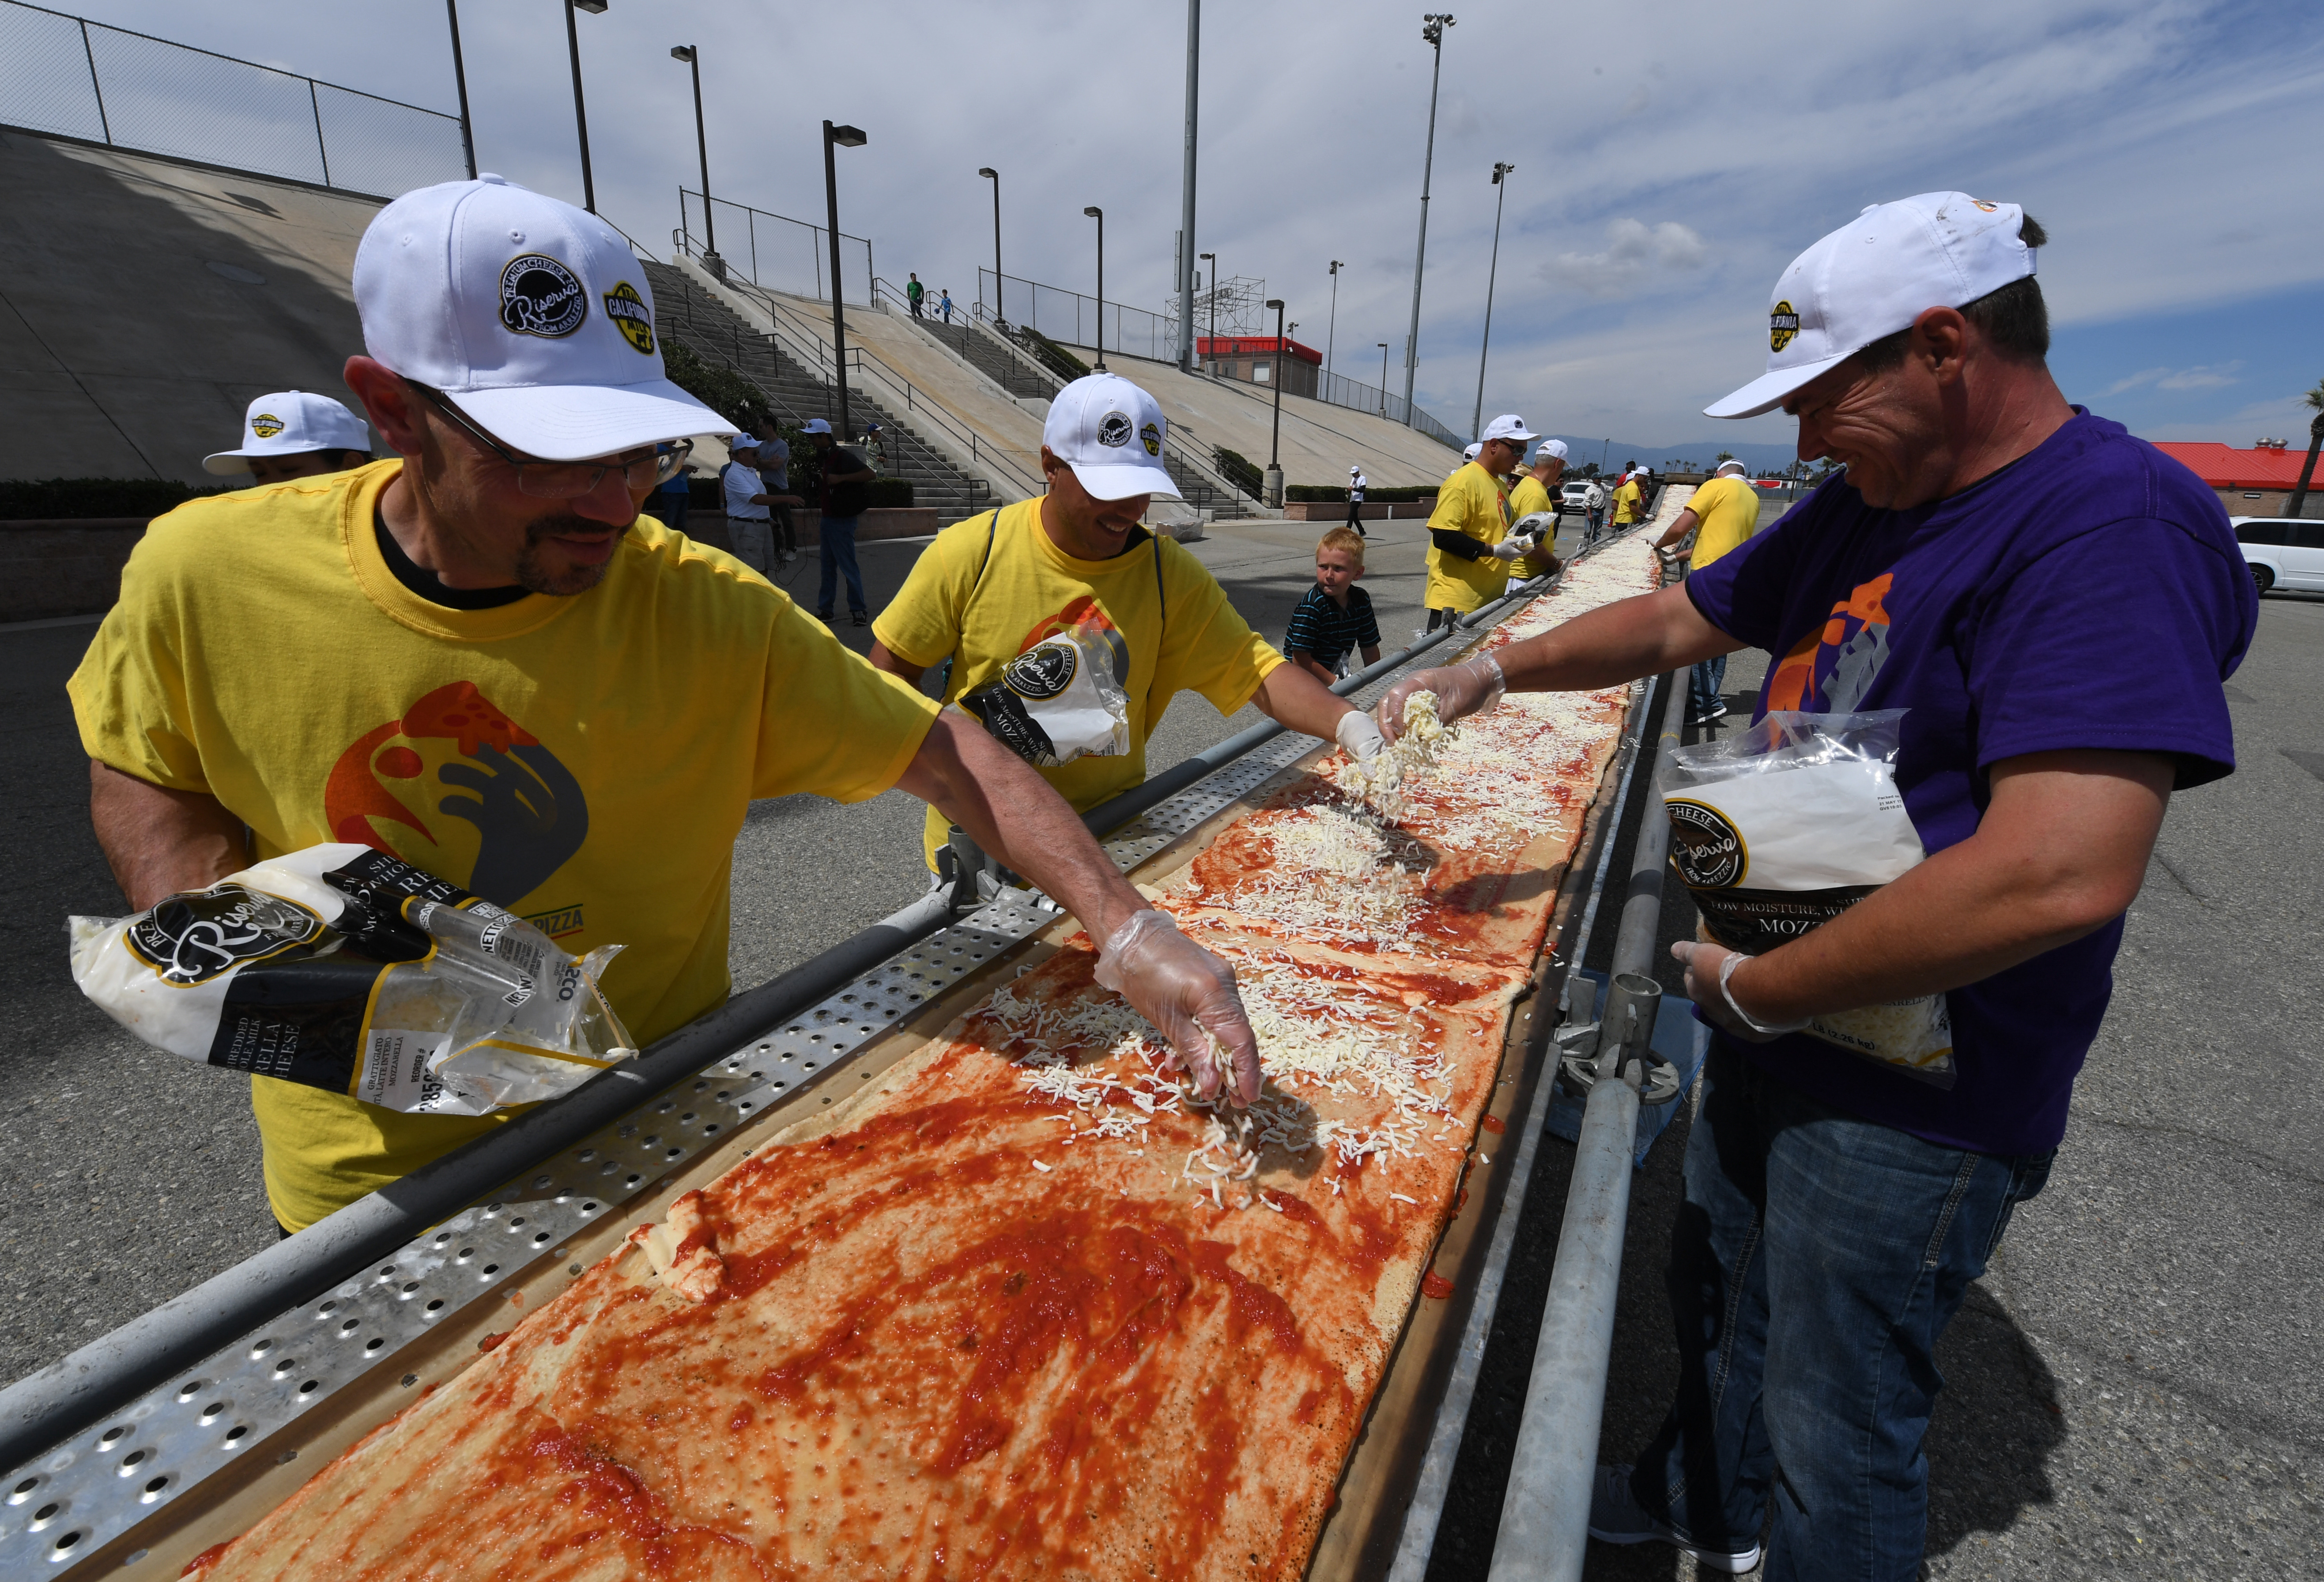 Egy kaliforniai autópályán megsütötték a világ leghosszabb pizzáját